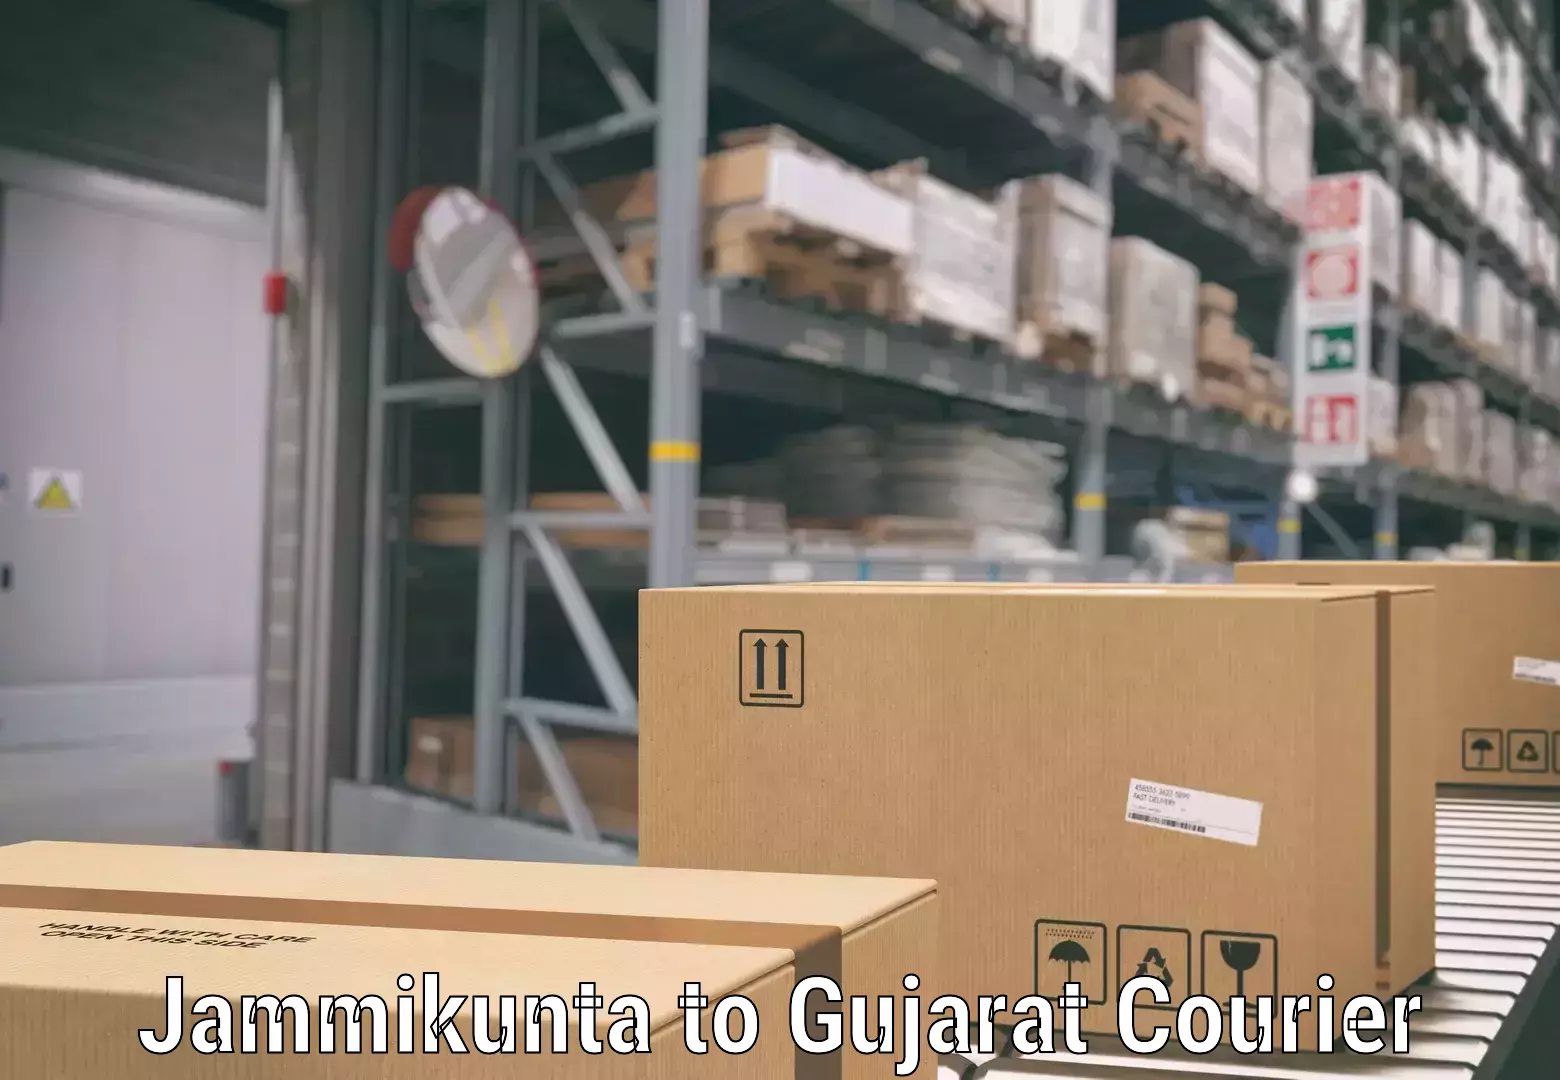 Baggage transport scheduler Jammikunta to Gujarat